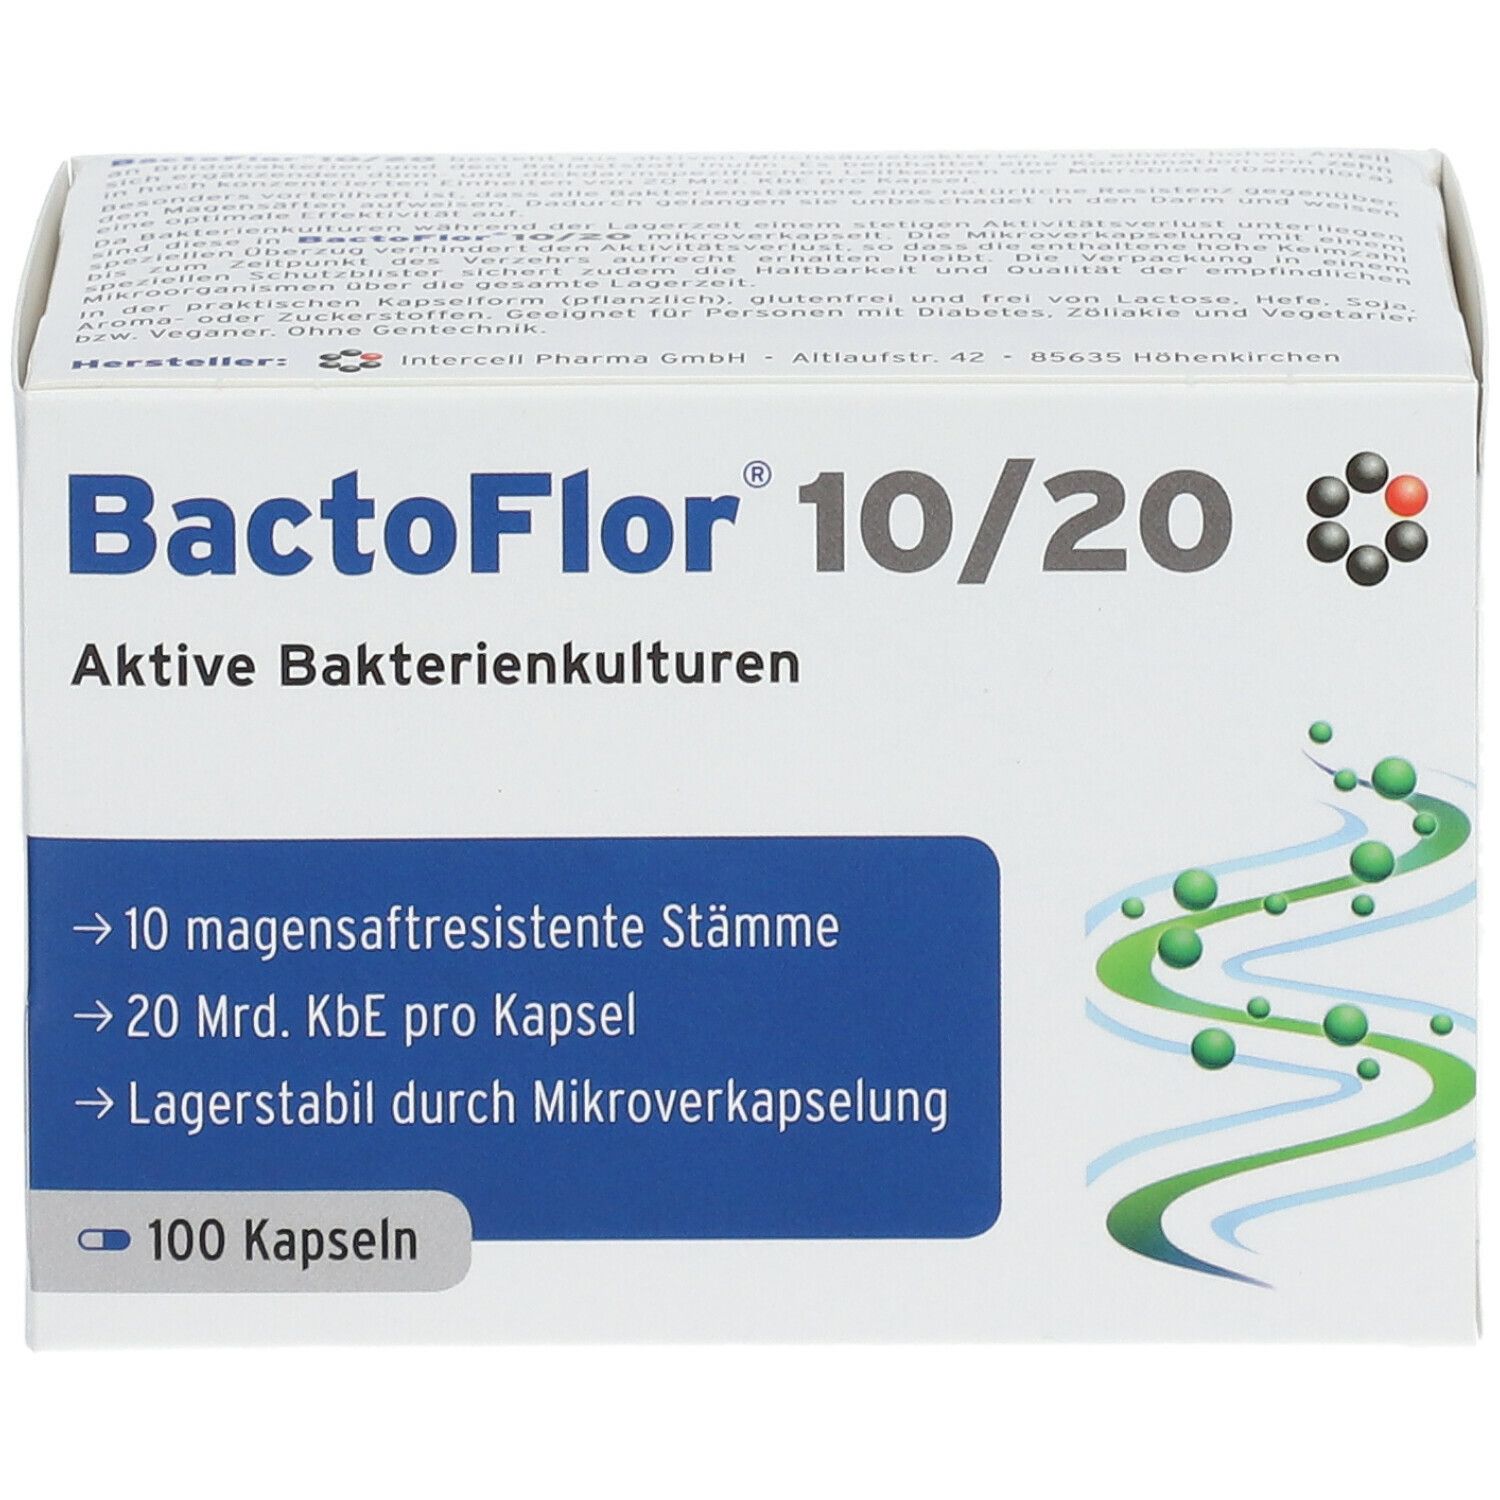 BactoFlor® 10/20